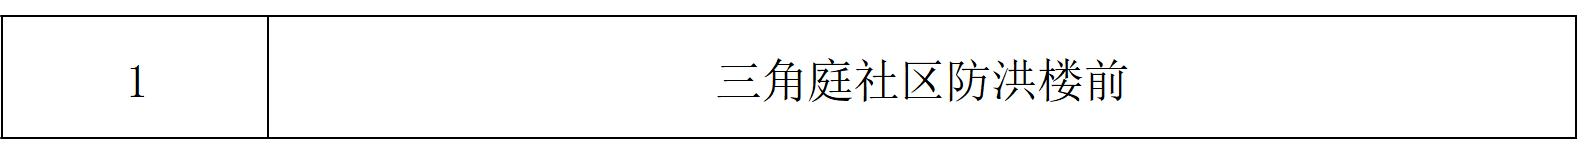 9月17日文昌开展第十轮全域核酸检测